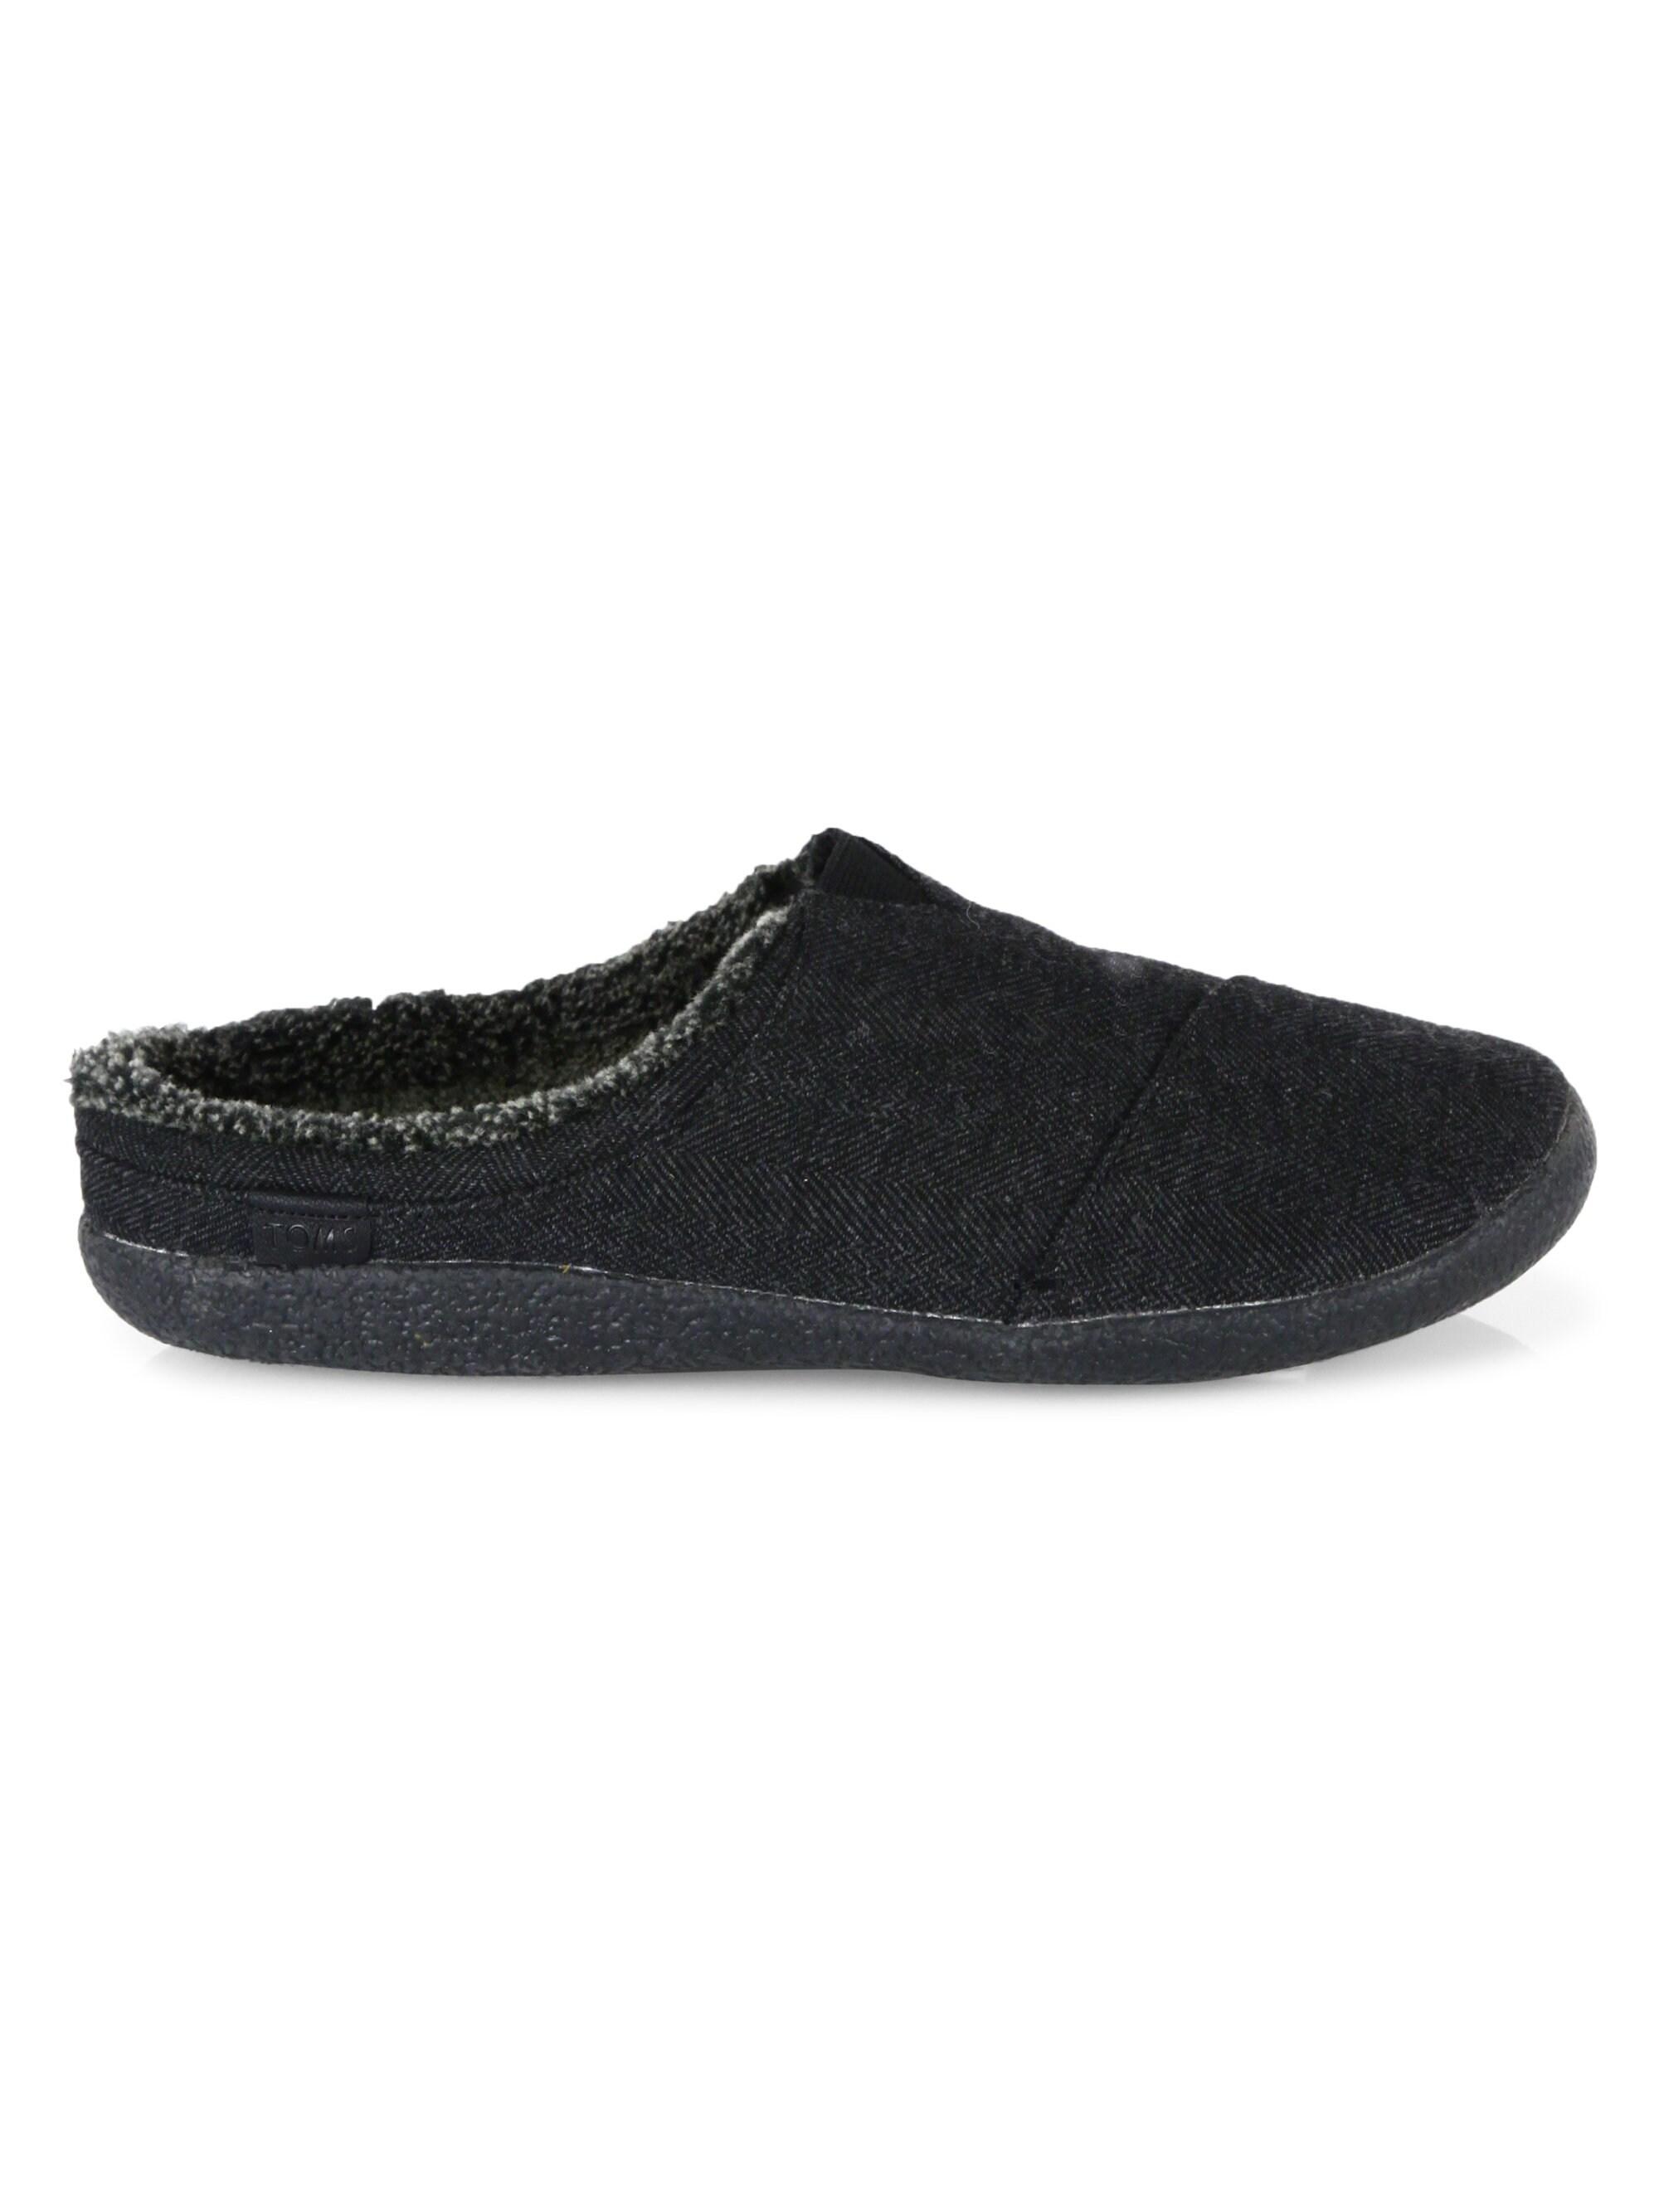 TOMS Men's Wool Slippers - Black for Men - Lyst